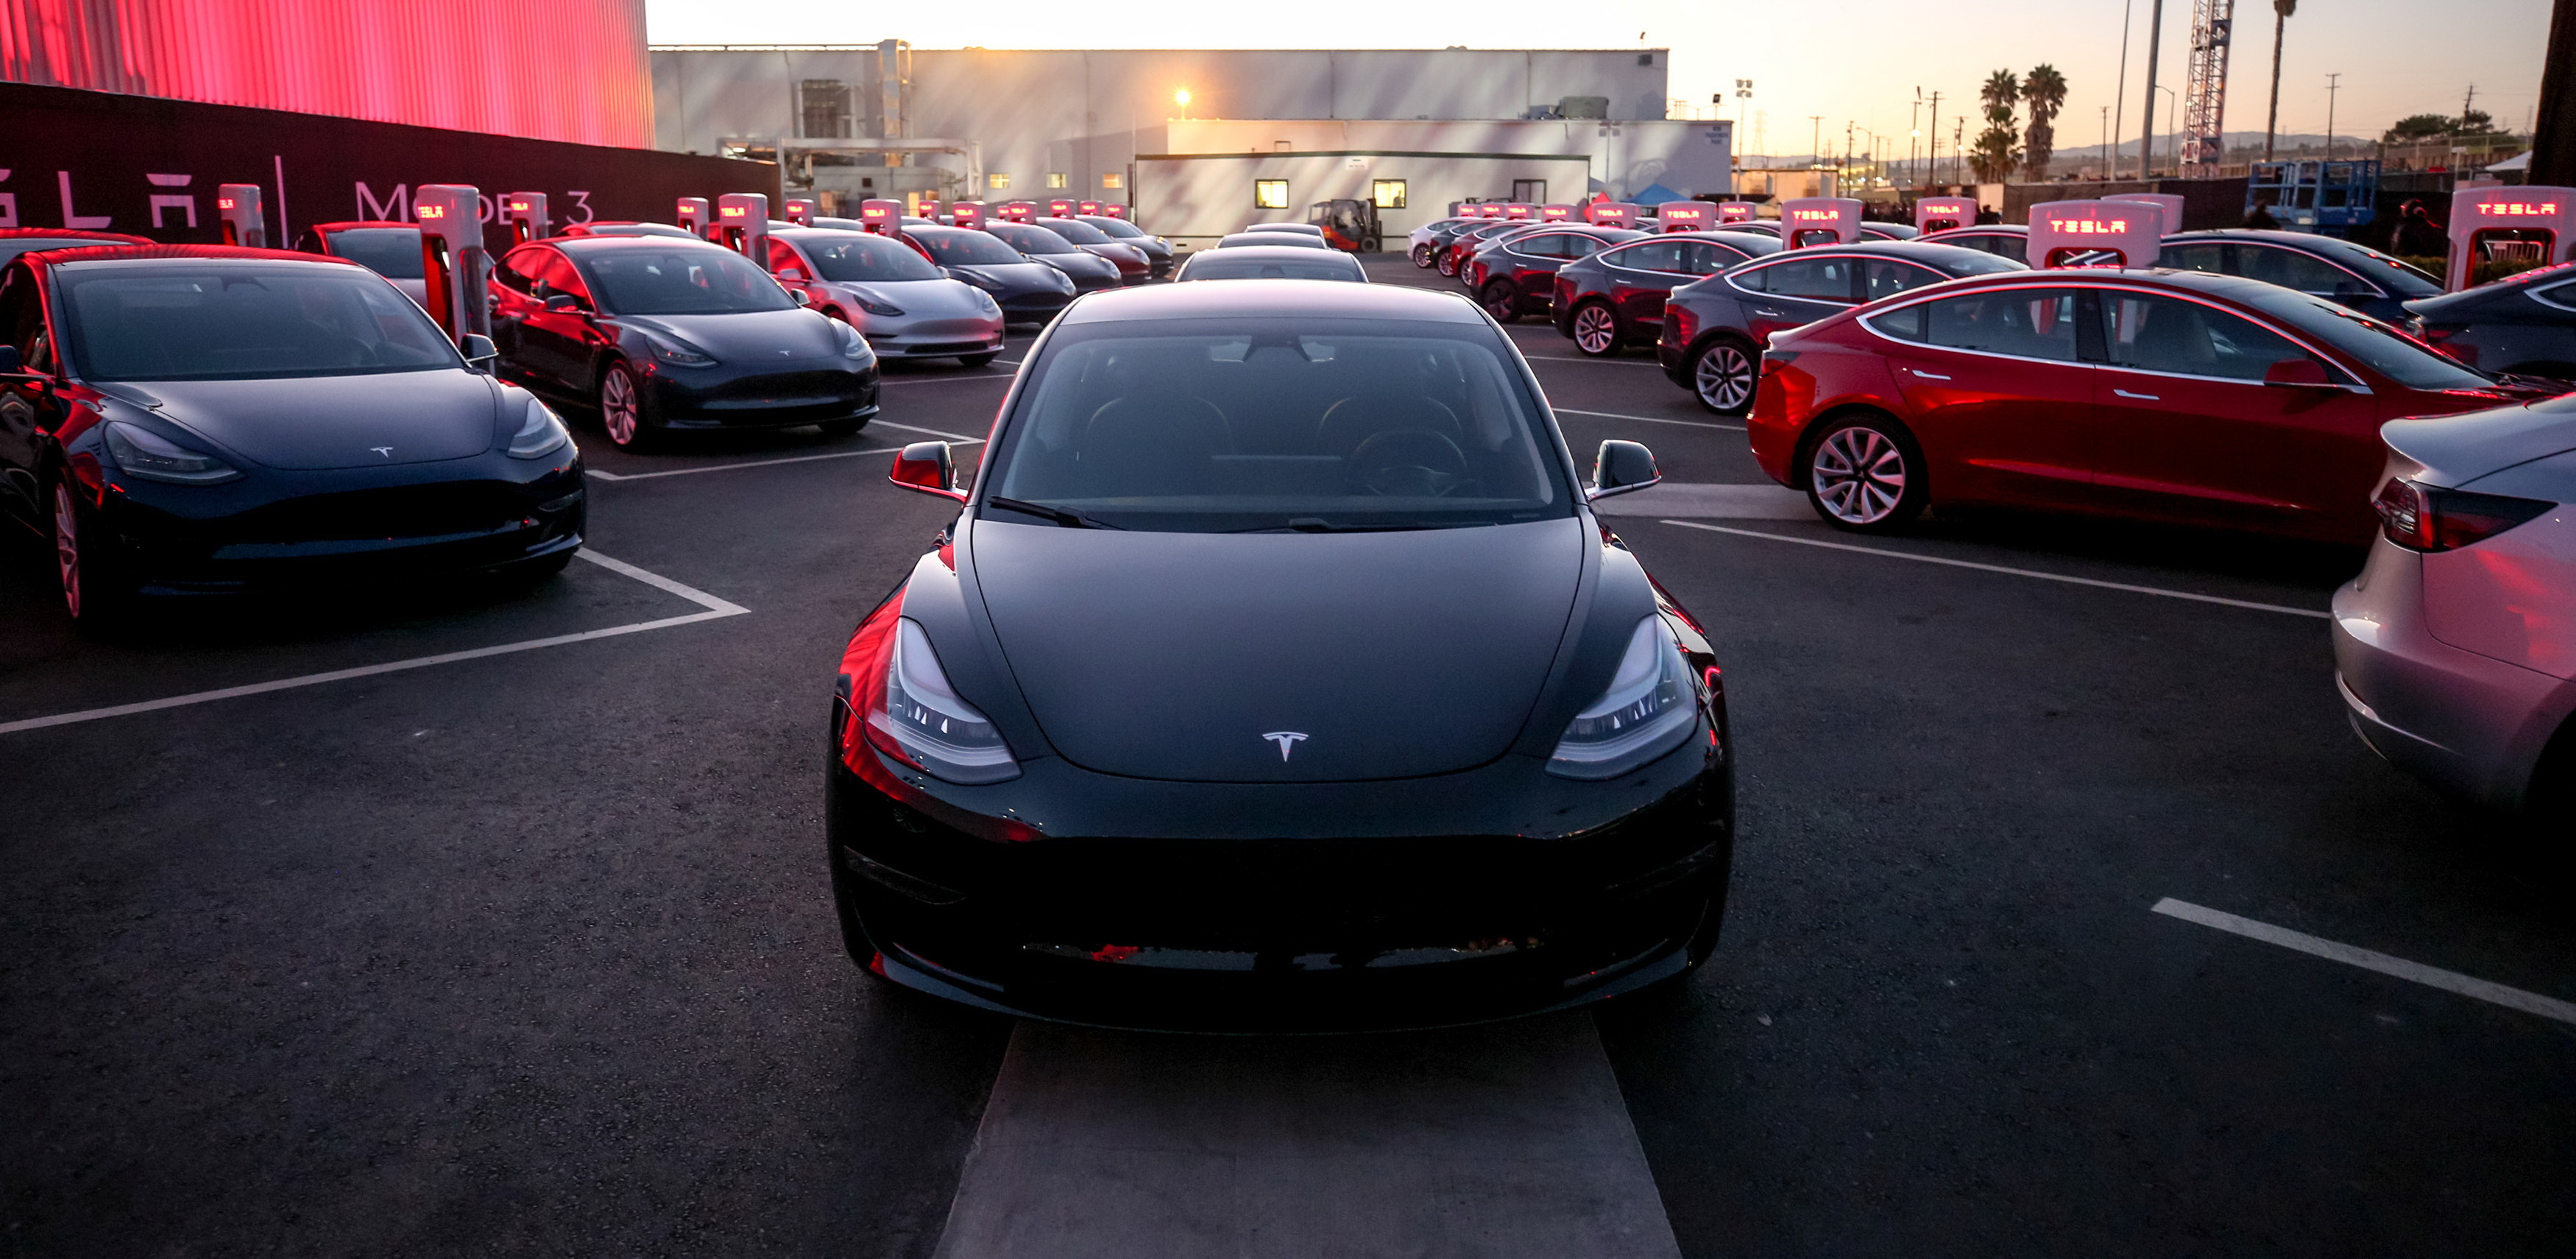 Model 3生產將再延誤幾個月。(Reuters圖片)